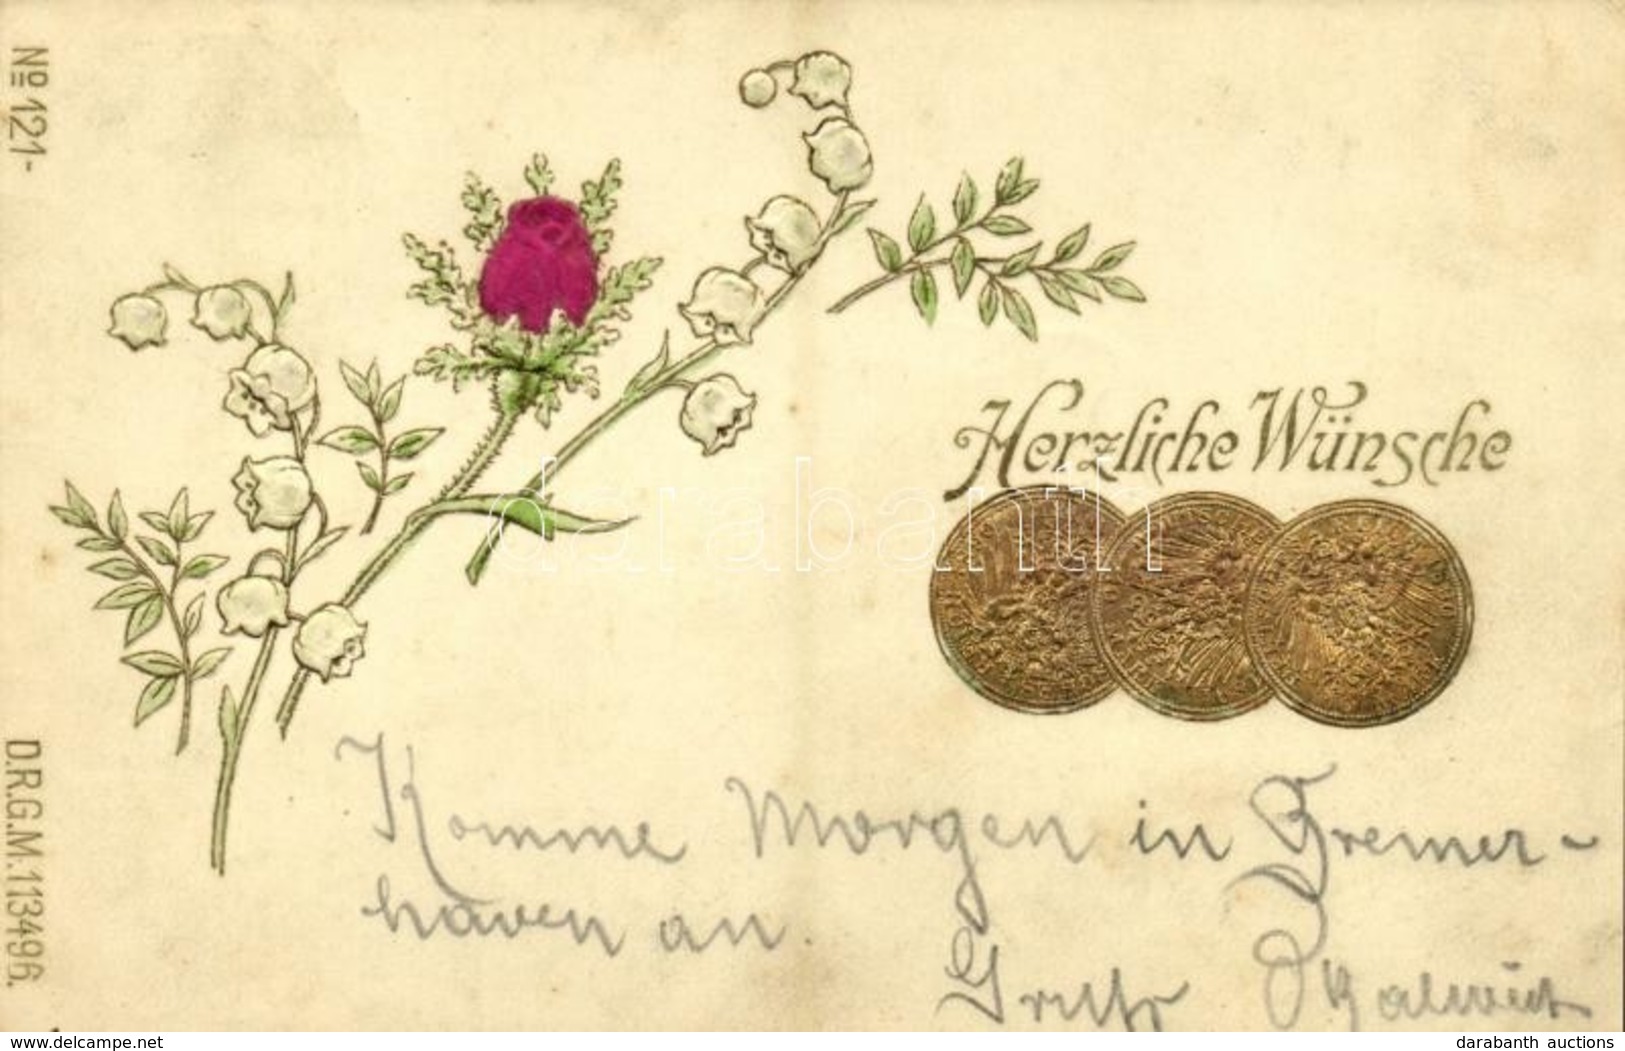 T2 1900 Herzliche Wünsche. Deutsche Reich 10 Mark / Coins Of Germany. Greeting With Flower, Silk Card. DRGM 113496. No.  - Ohne Zuordnung